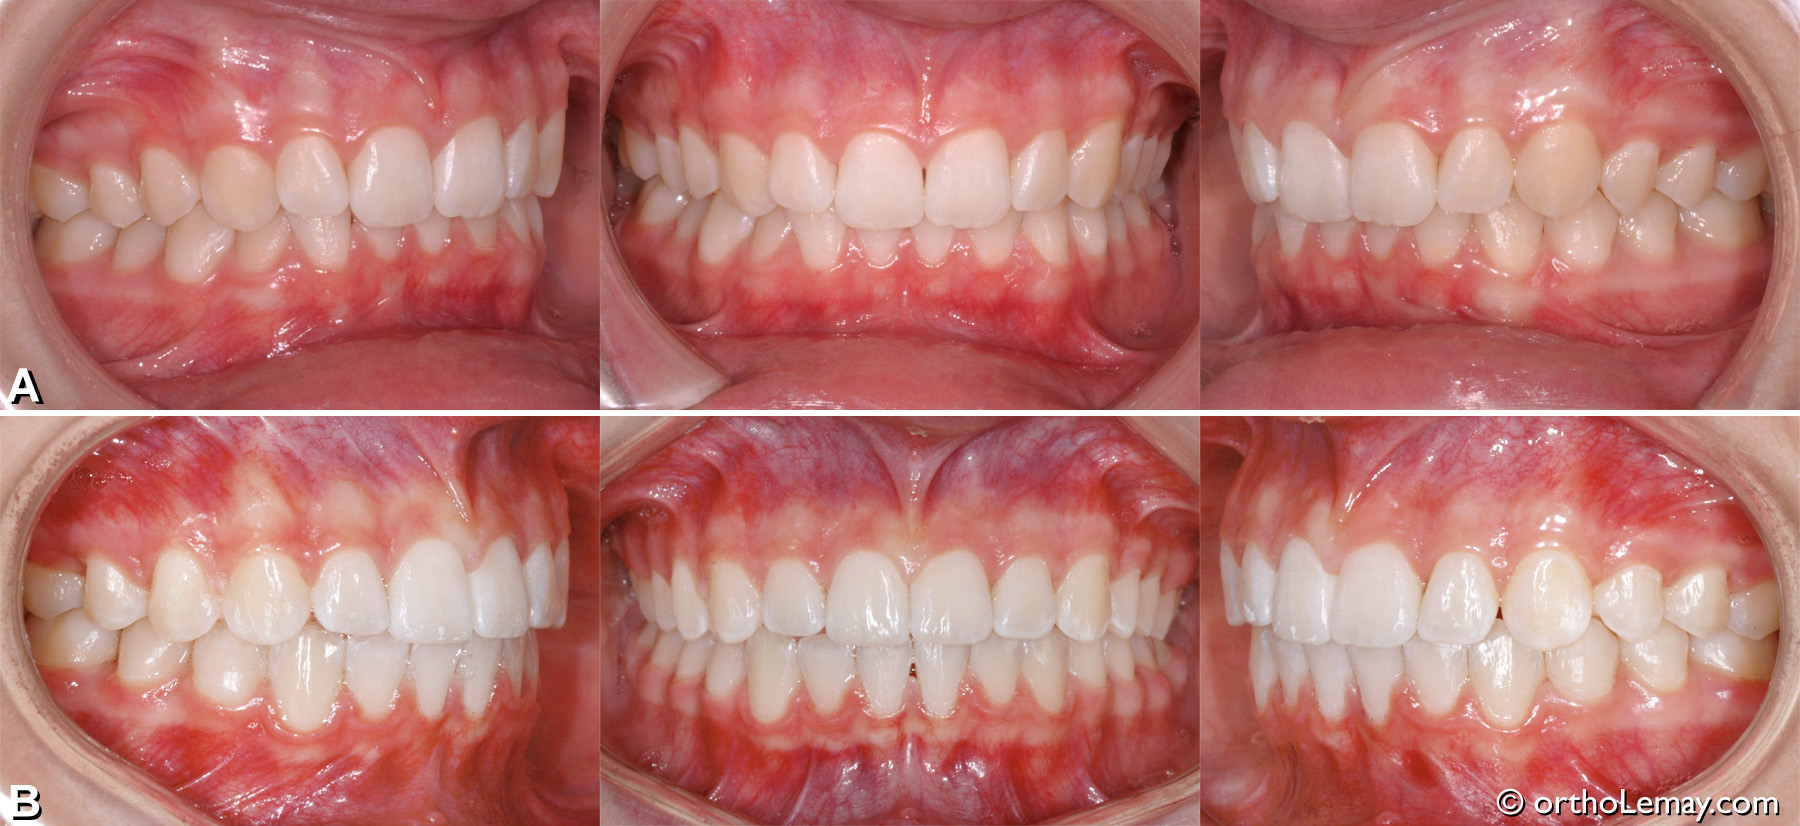 Malocclusion dentaire CL1 avec overbite et déviation des lignes médianes.